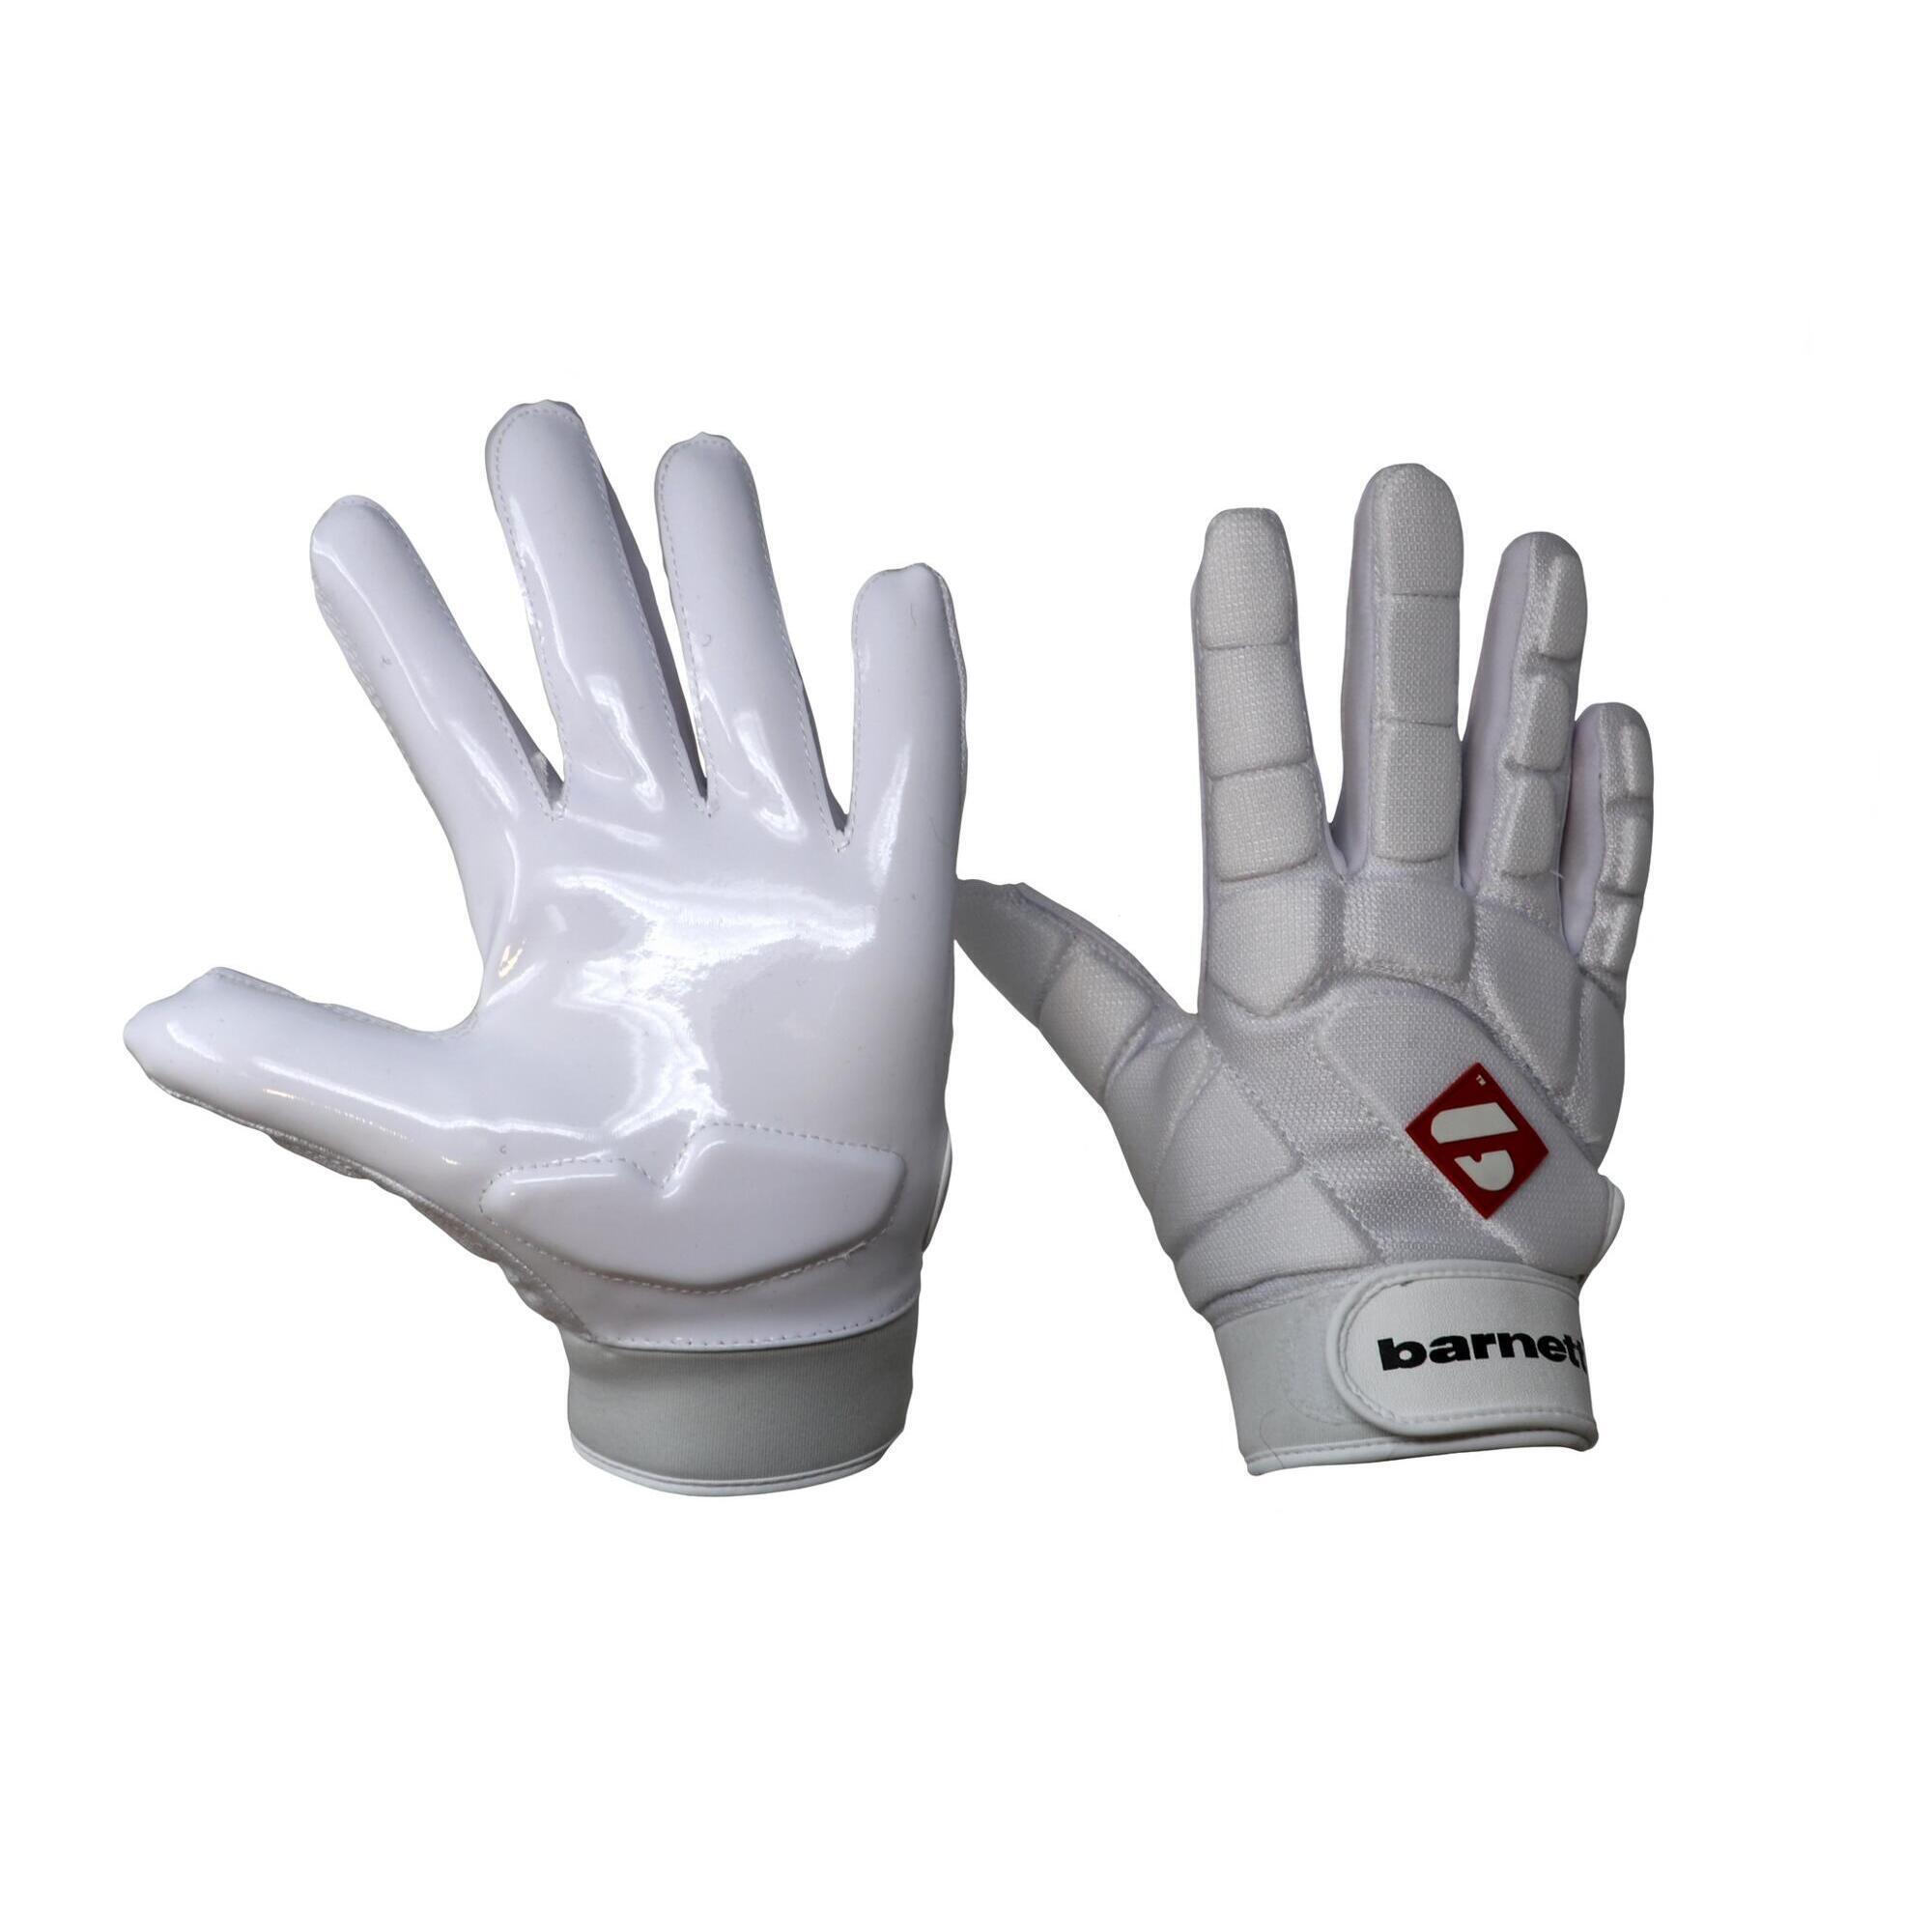 BARNETT  pro linebacker american football gloves, LB,RB,TE White FKG-03